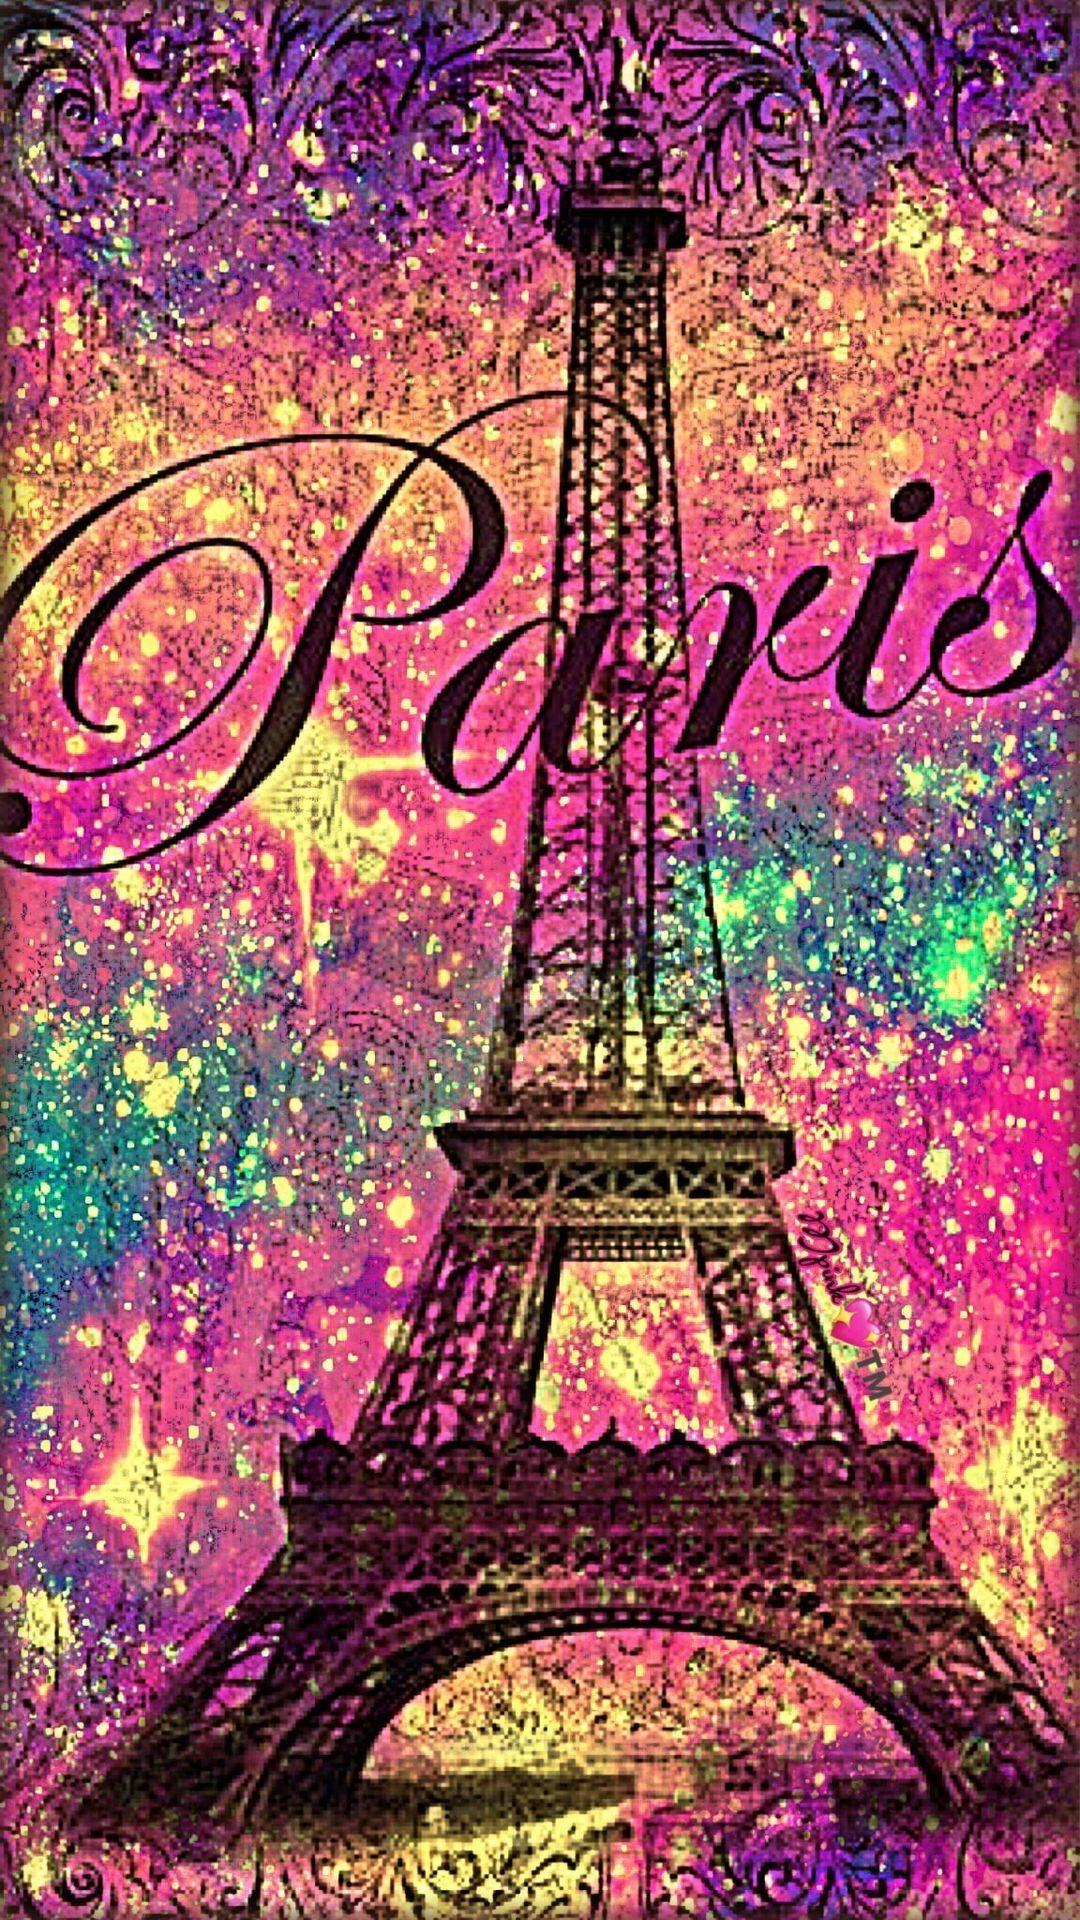 Paris a beautiful destination city by virlyandini on Steller  Paris  pictures Paris wallpaper Eiffel tower